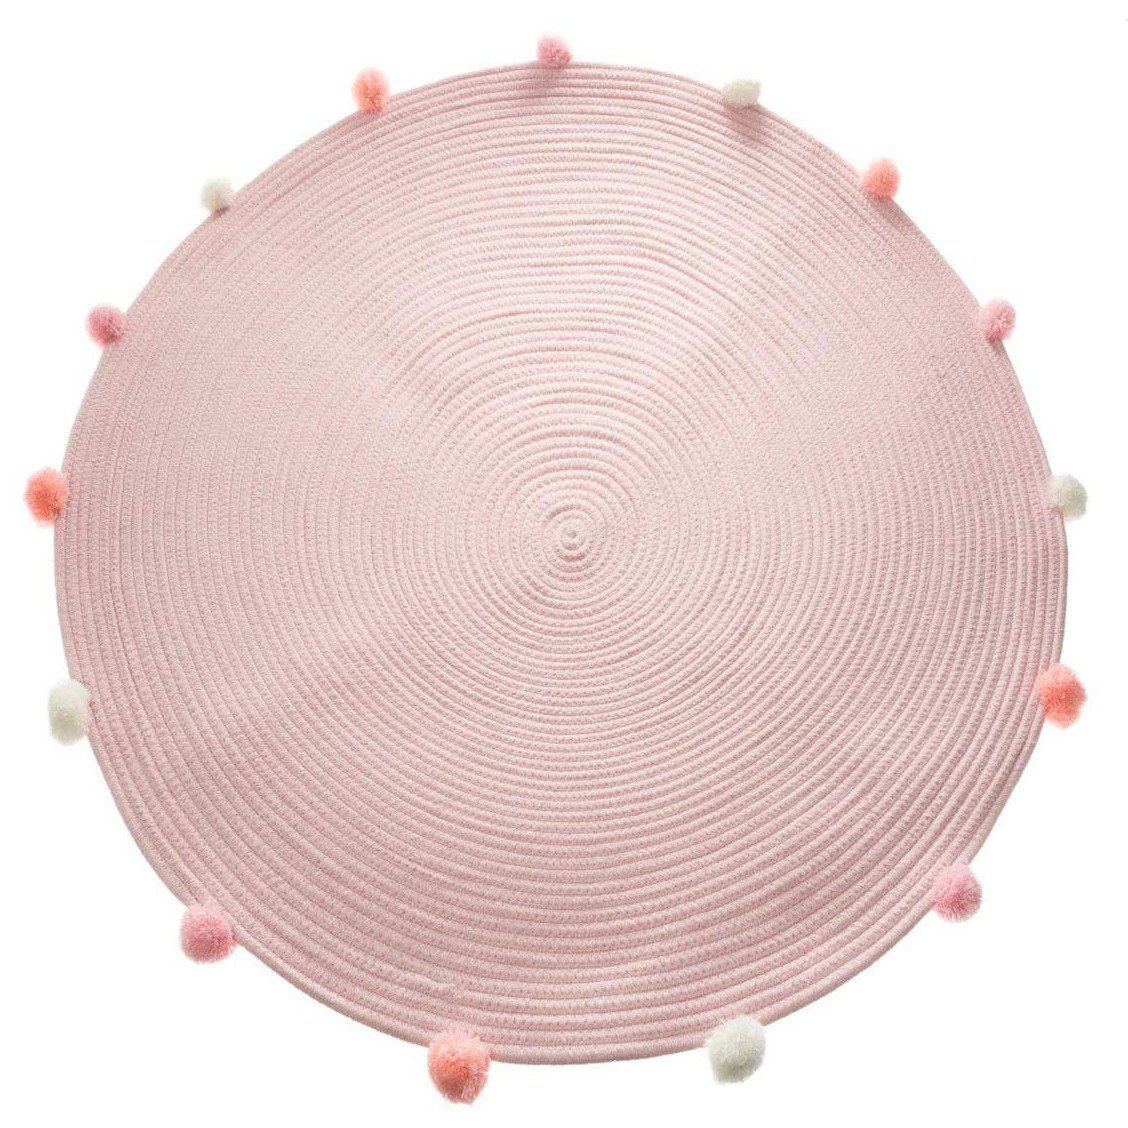 Atmosphera for kids Růžový koberec pro dětský pokoj s dekorativními pompony, průměr 90 cm - EMAKO.CZ s.r.o.